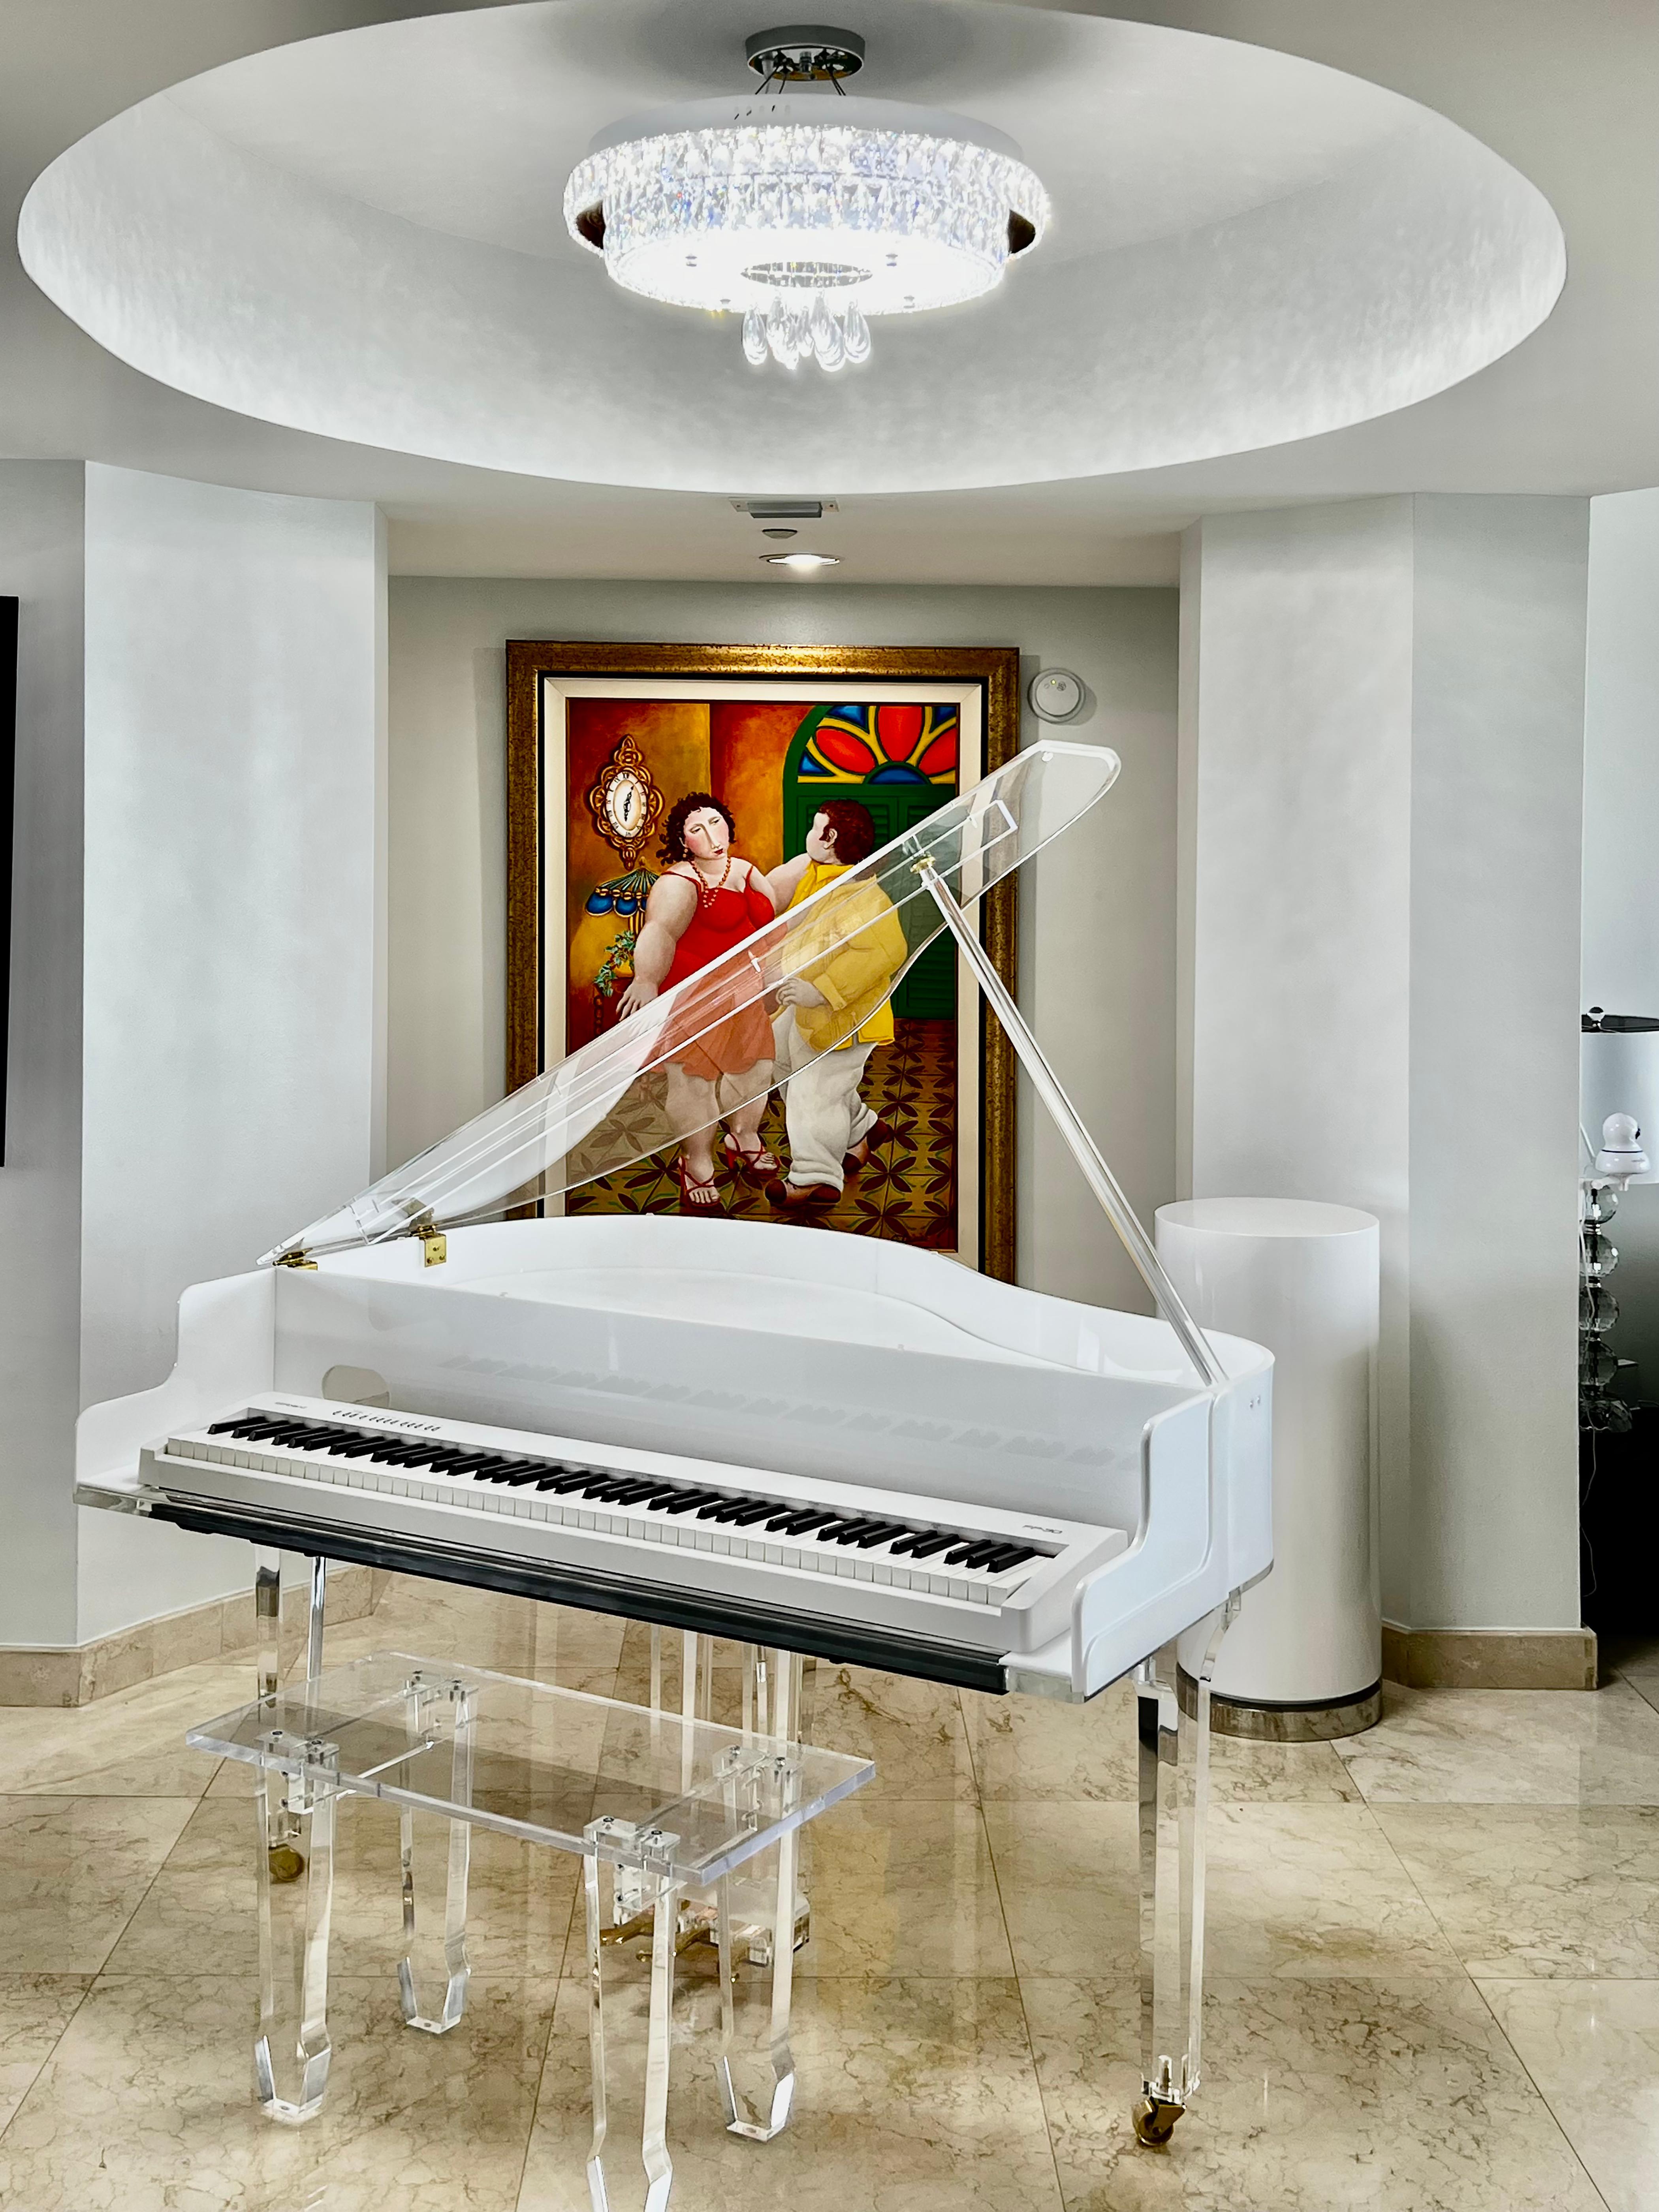 Grand piano et banc en acrylique Lucite faits sur-mesure par Iconic Design Gallery

Nous proposons à la vente un nouveau piano à queue pour bébé, fabriqué sur mesure en Lucite et acrylique, avec un banc assorti. Le piano est doté d'épais pieds en